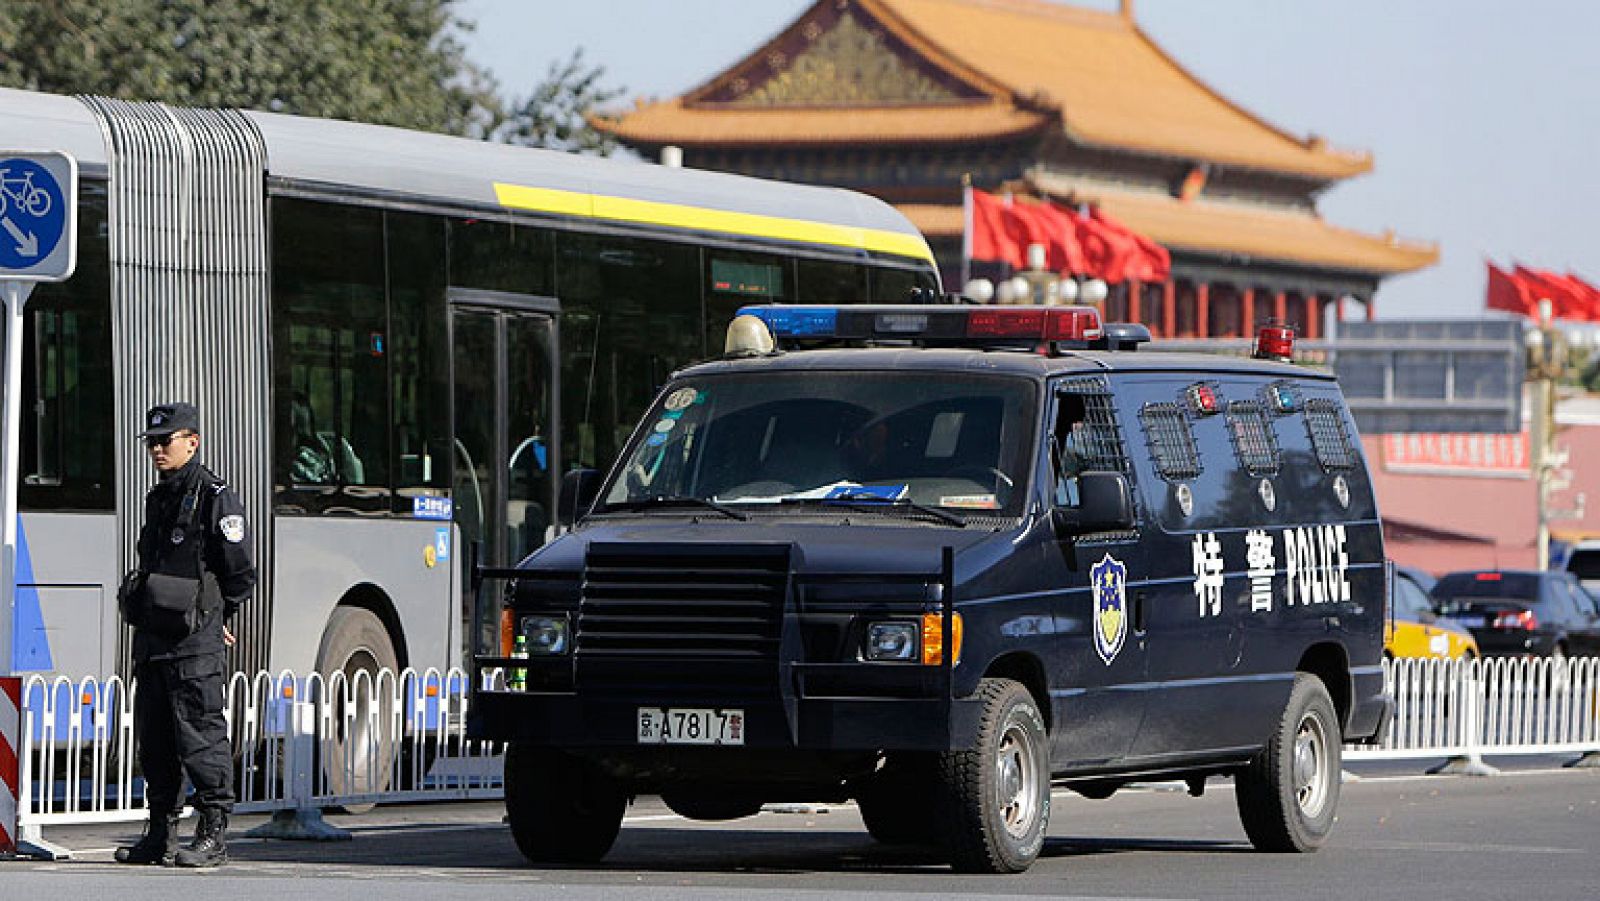  La Policía china emitió a última hora del lunes un aviso a los hoteles de Pekín para buscar pistas sobre dos personas sospechosas de estar relacionadas con el suceso del mismo día en la plaza de Tiananmen, en la capital china.